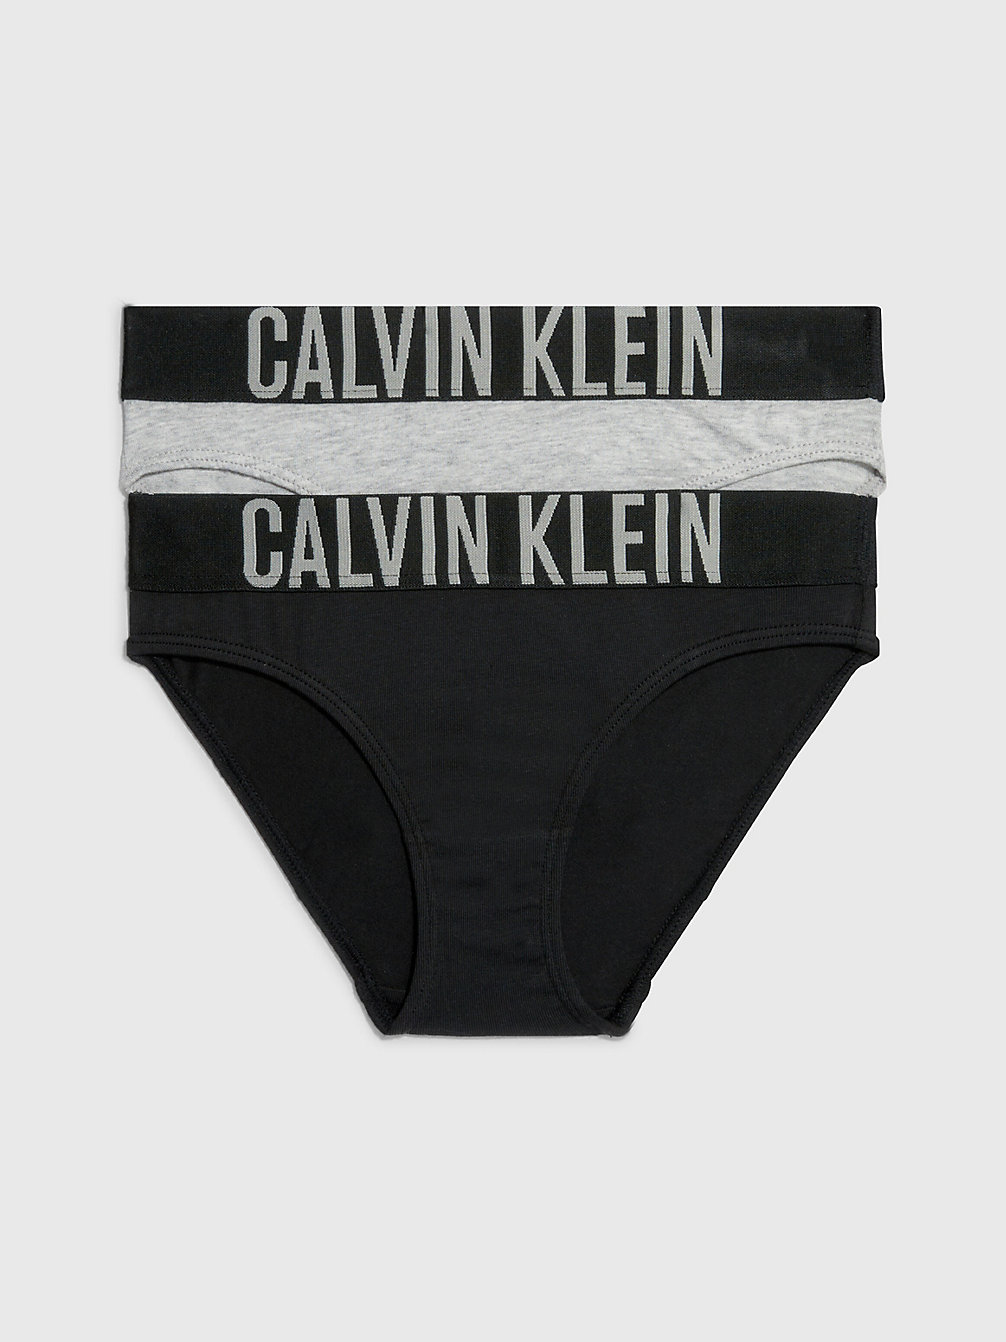 1 GREY HEATHER/ 1 BLACK > 2-Pack Meisjesslips - Intense Power > undefined girls - Calvin Klein